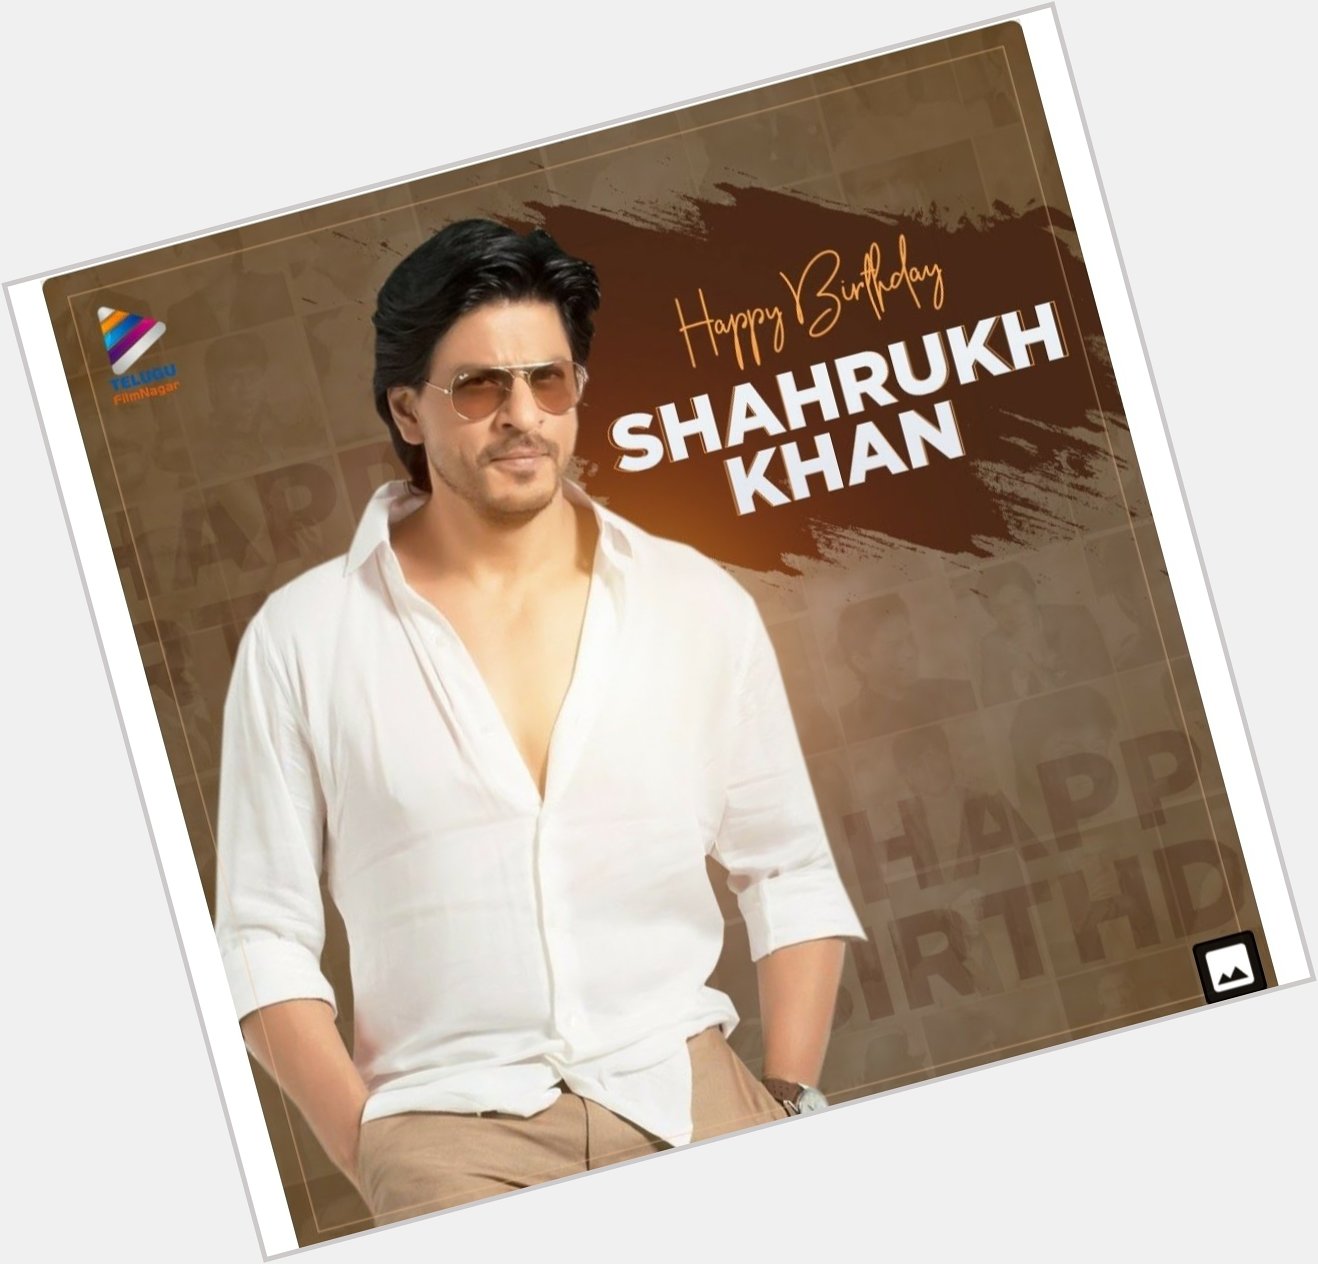 Happy Birthday. 
Shahrukh Khan. Gru. 